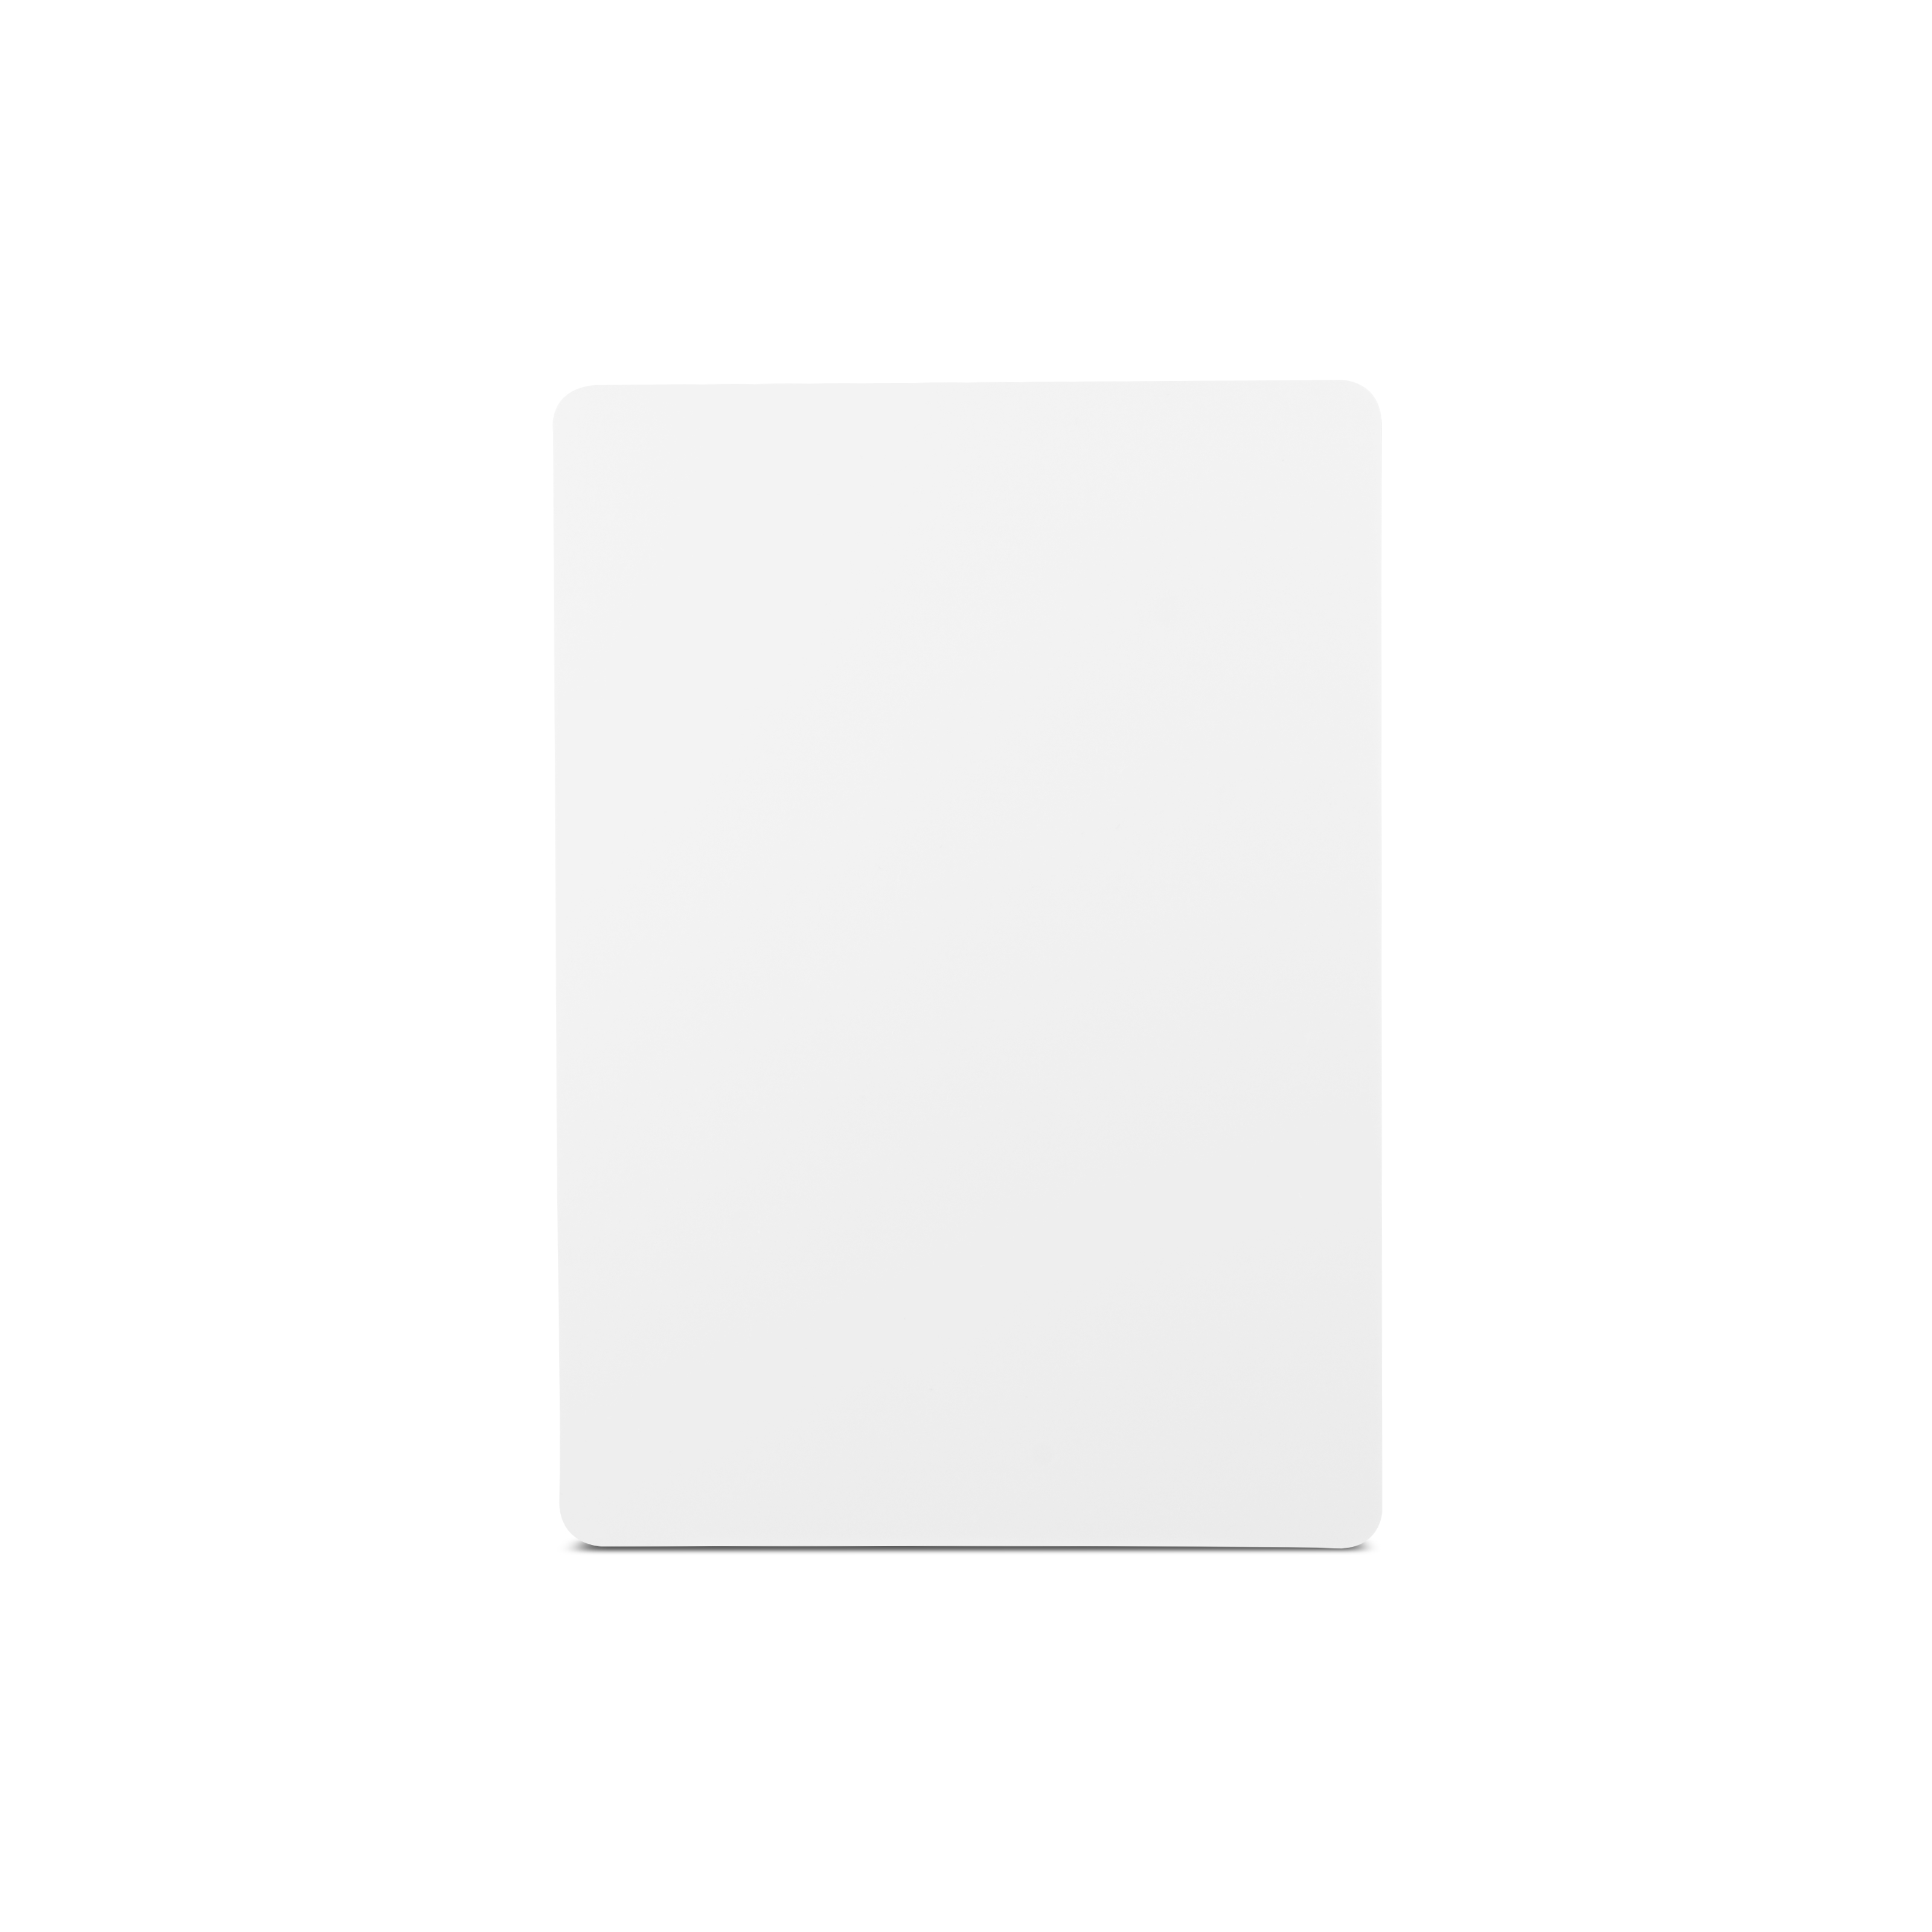 NFC plate PETG - A6 - NTAG213 - 180 byte - white glossy